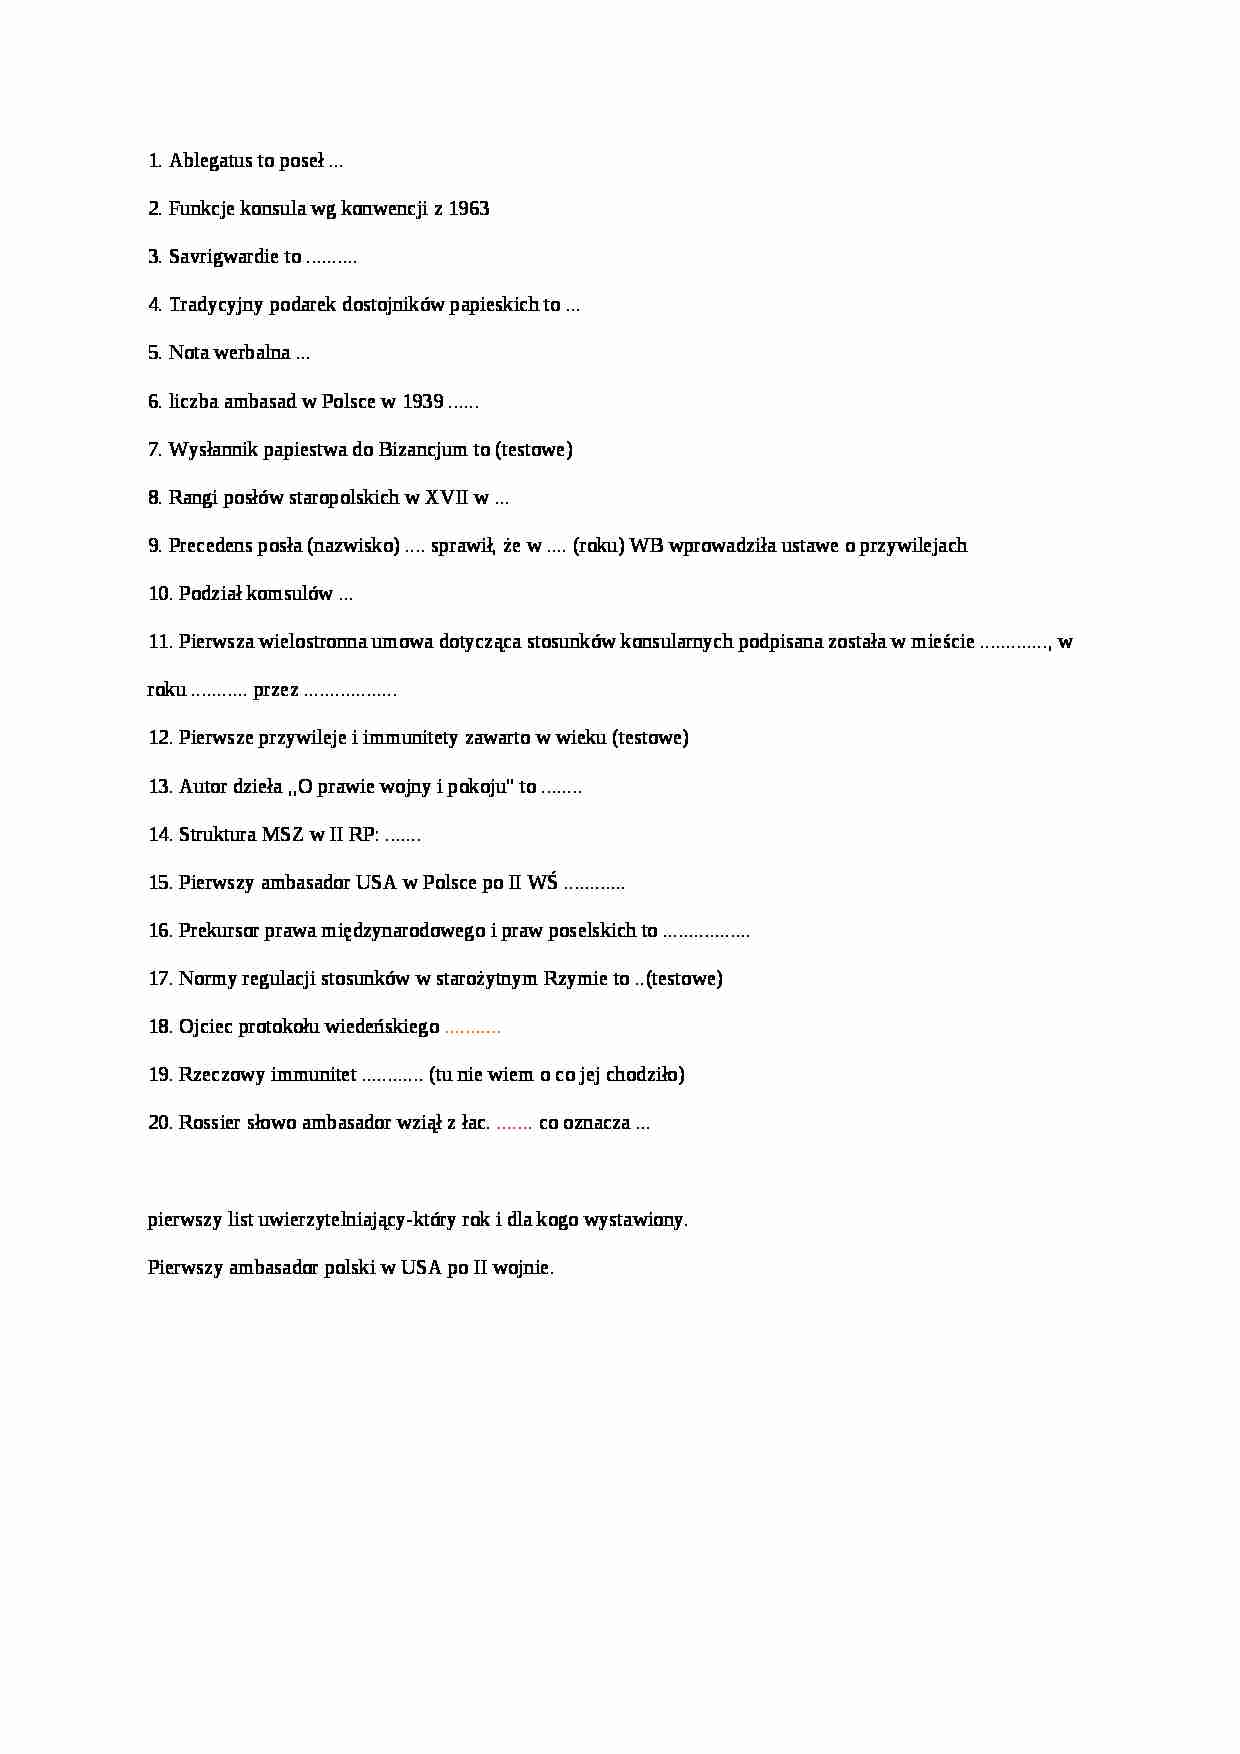 Protokół dyplomatyczny - pytania do egzaminu - strona 1